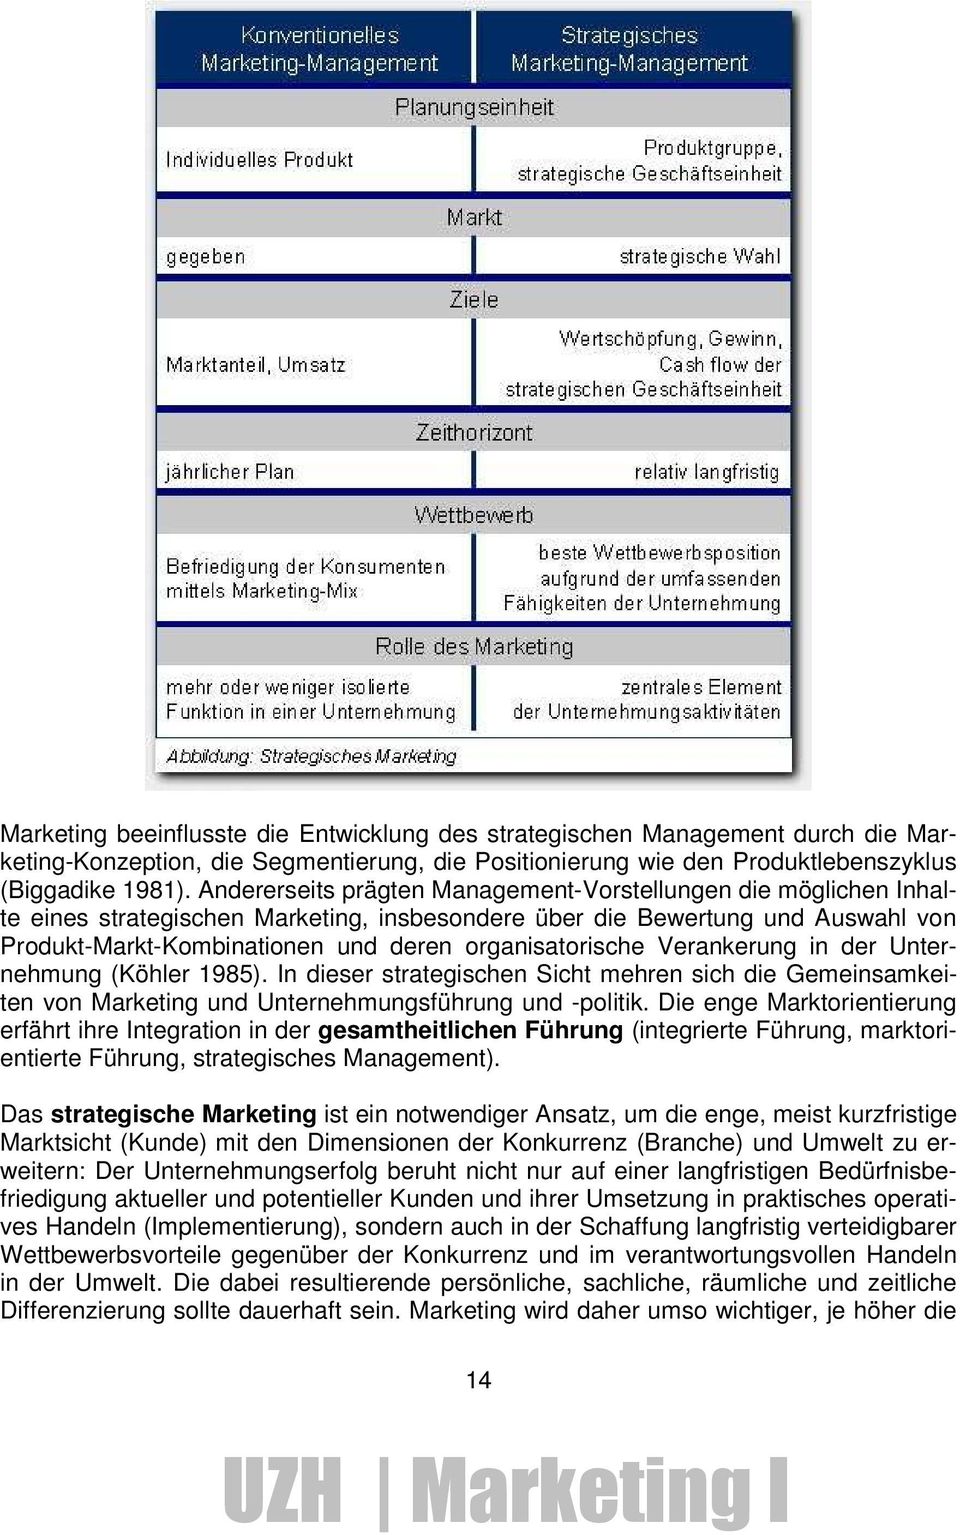 organisatorische Verankerung in der Unternehmung (Köhler 1985). In dieser strategischen Sicht mehren sich die Gemeinsamkeiten von Marketing und Unternehmungsführung und -politik.